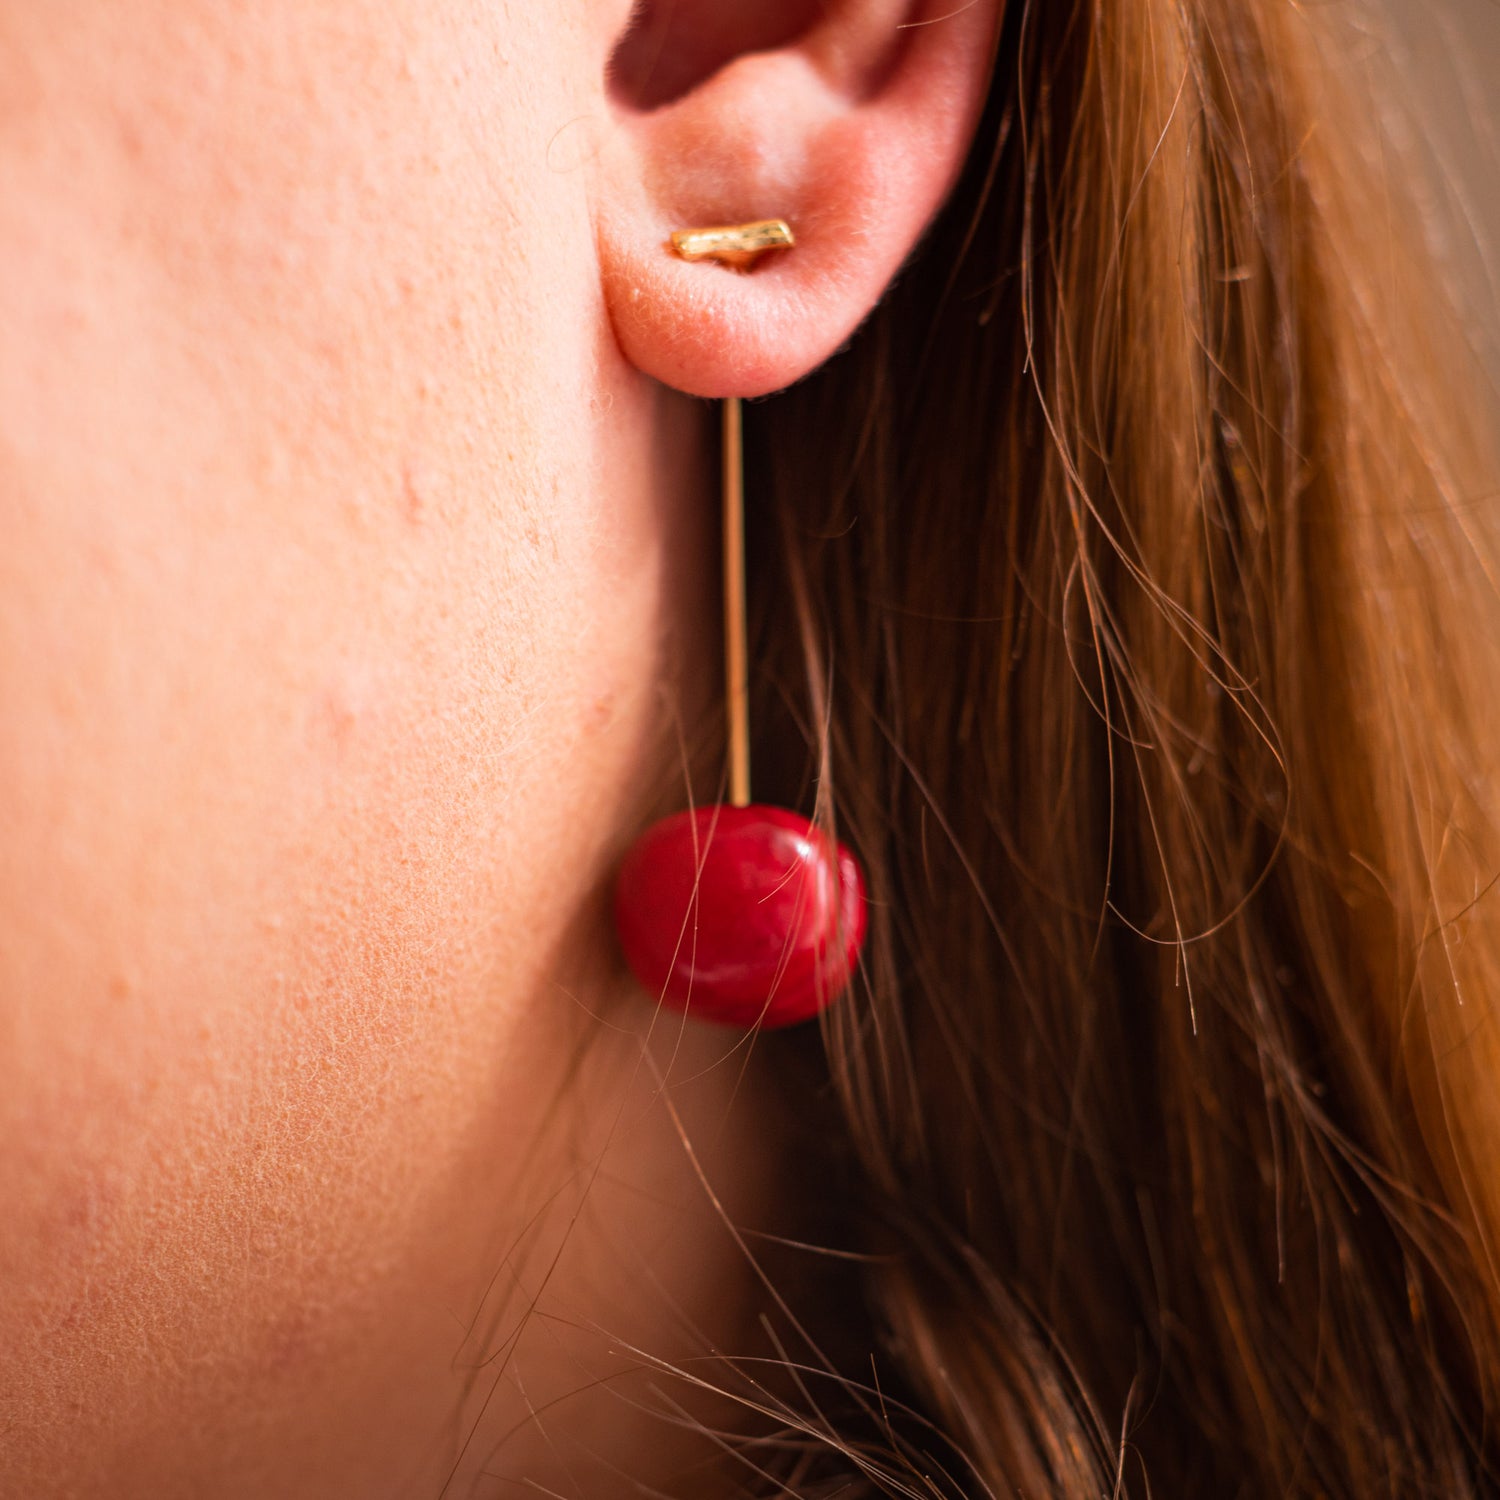 handmade cherry earrings